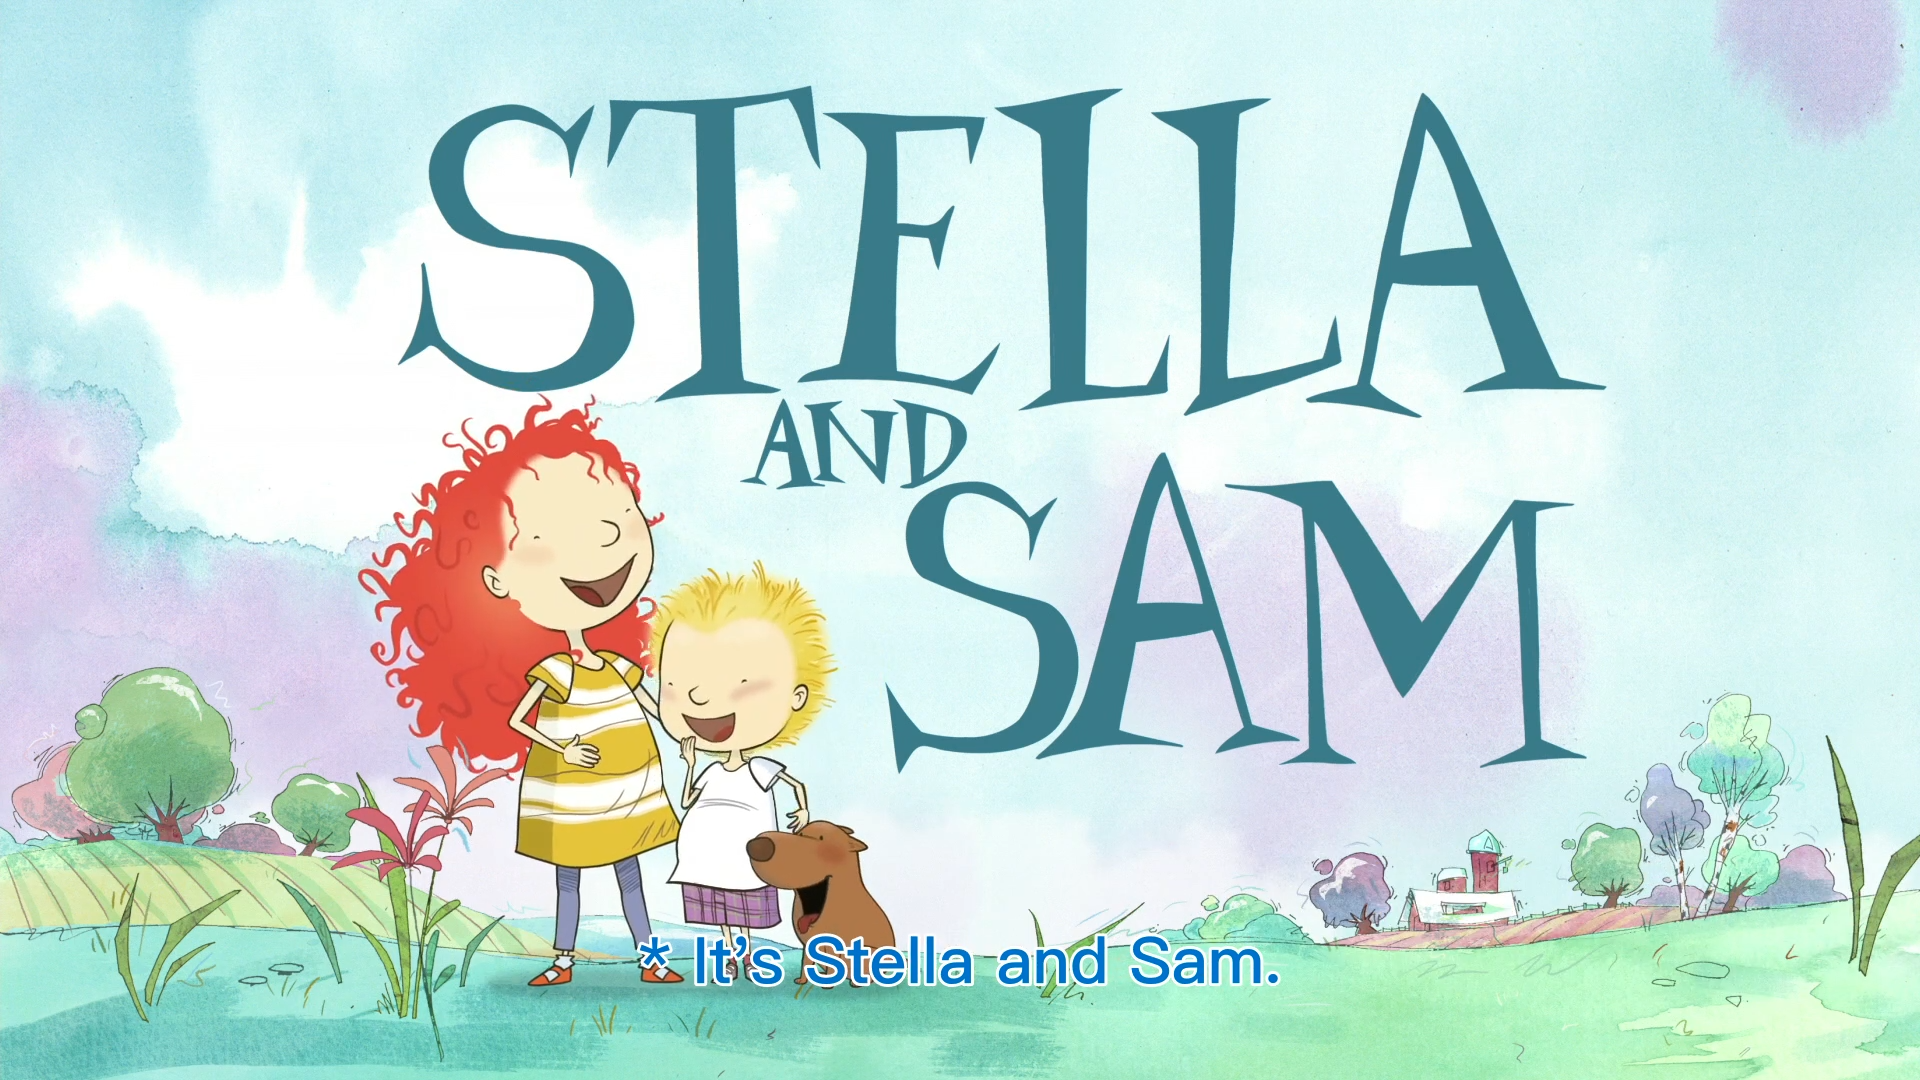 加拿大冒险益智Stella and Sam斯特拉和山姆英文版，全26集，1080P高清视频带英文字幕，百度网盘下载！ | 继续淘